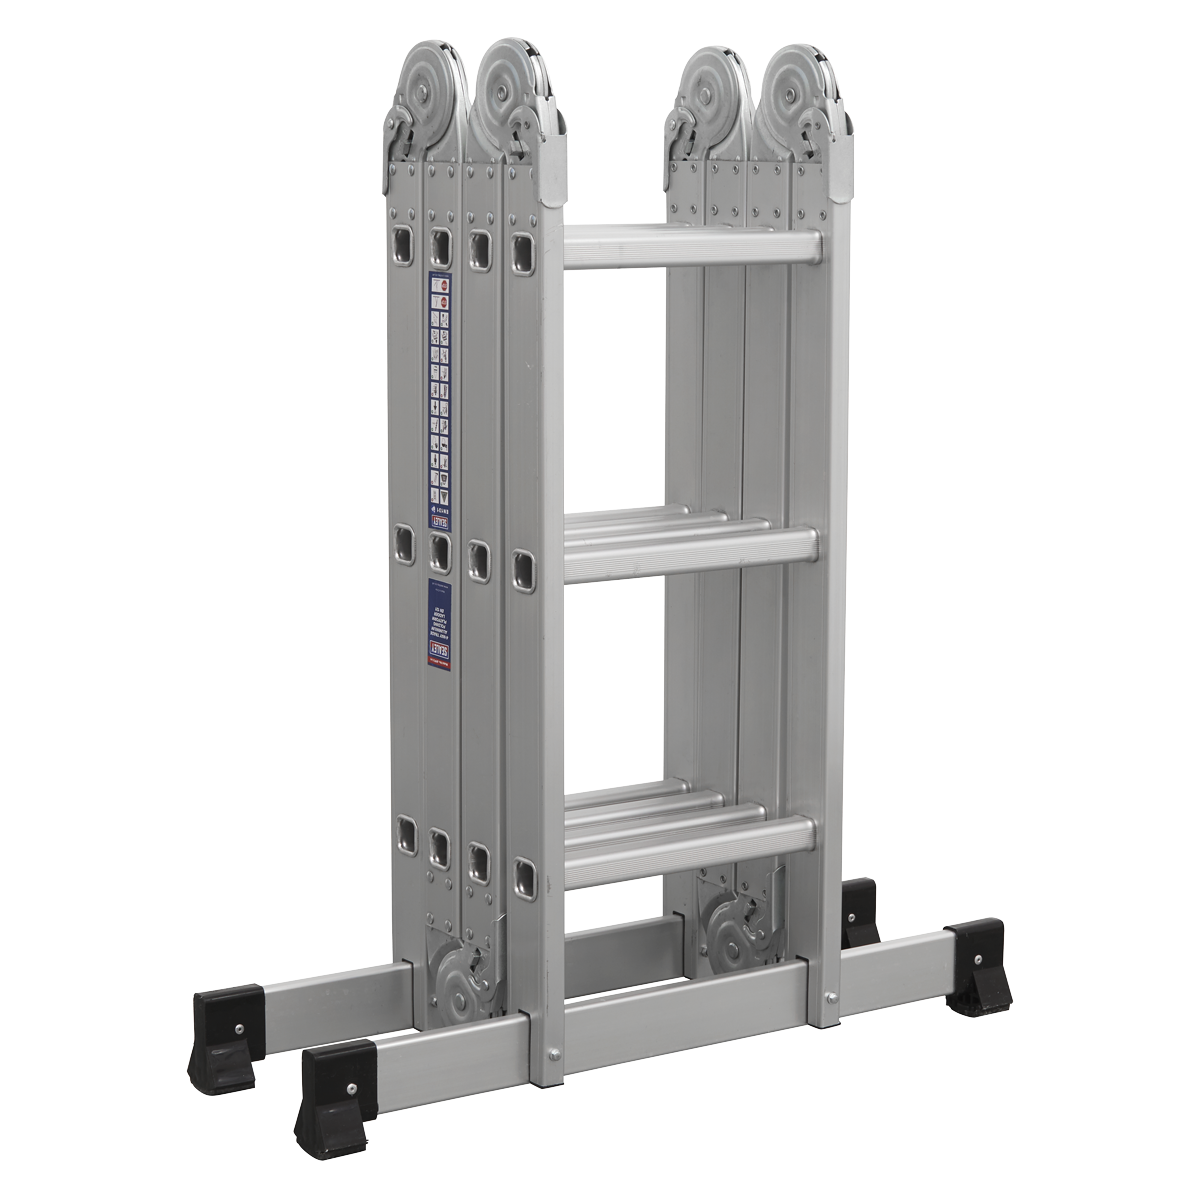 Aluminium Folding Platform Ladder 4-Way EN 131